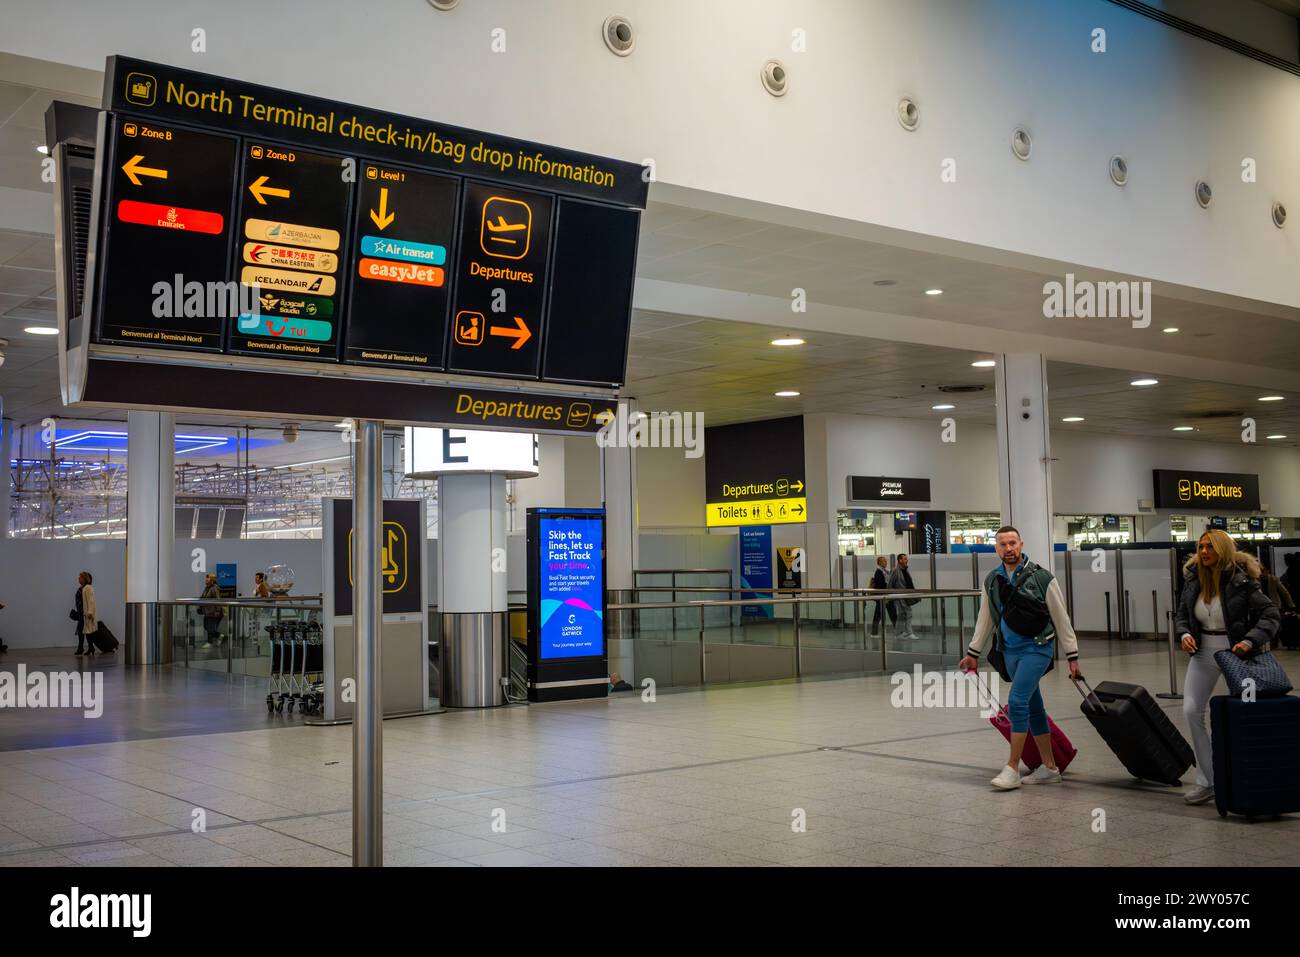 Cartello con le informazioni per il check-in alle partenze presso North Terminal, Aeroporto di Gatwick, Londra, Regno Unito. Foto Stock